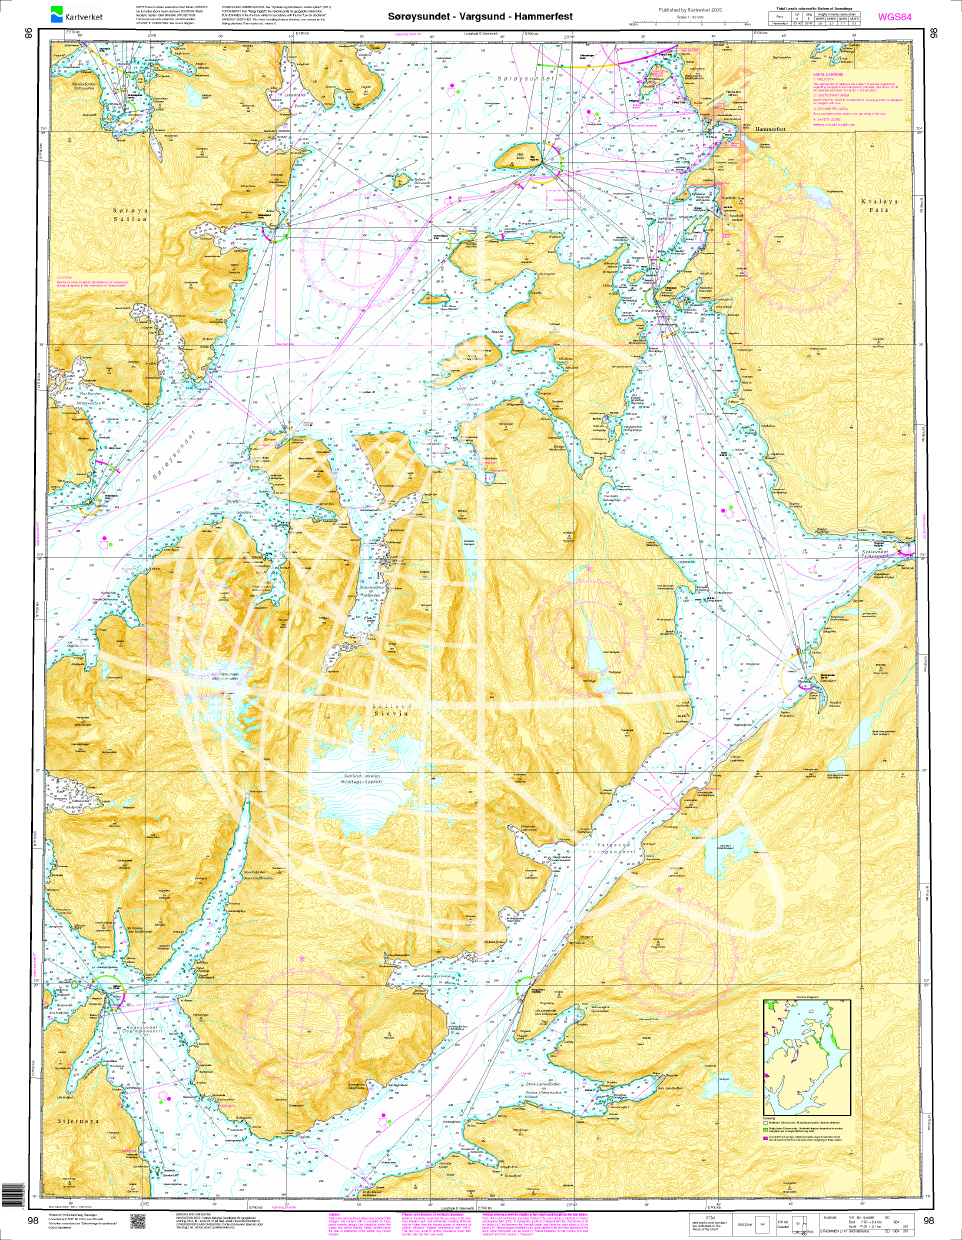 Norwegen N 98 Troms und Finmark mit Sørøysundet - Vargsund - Hammerfest